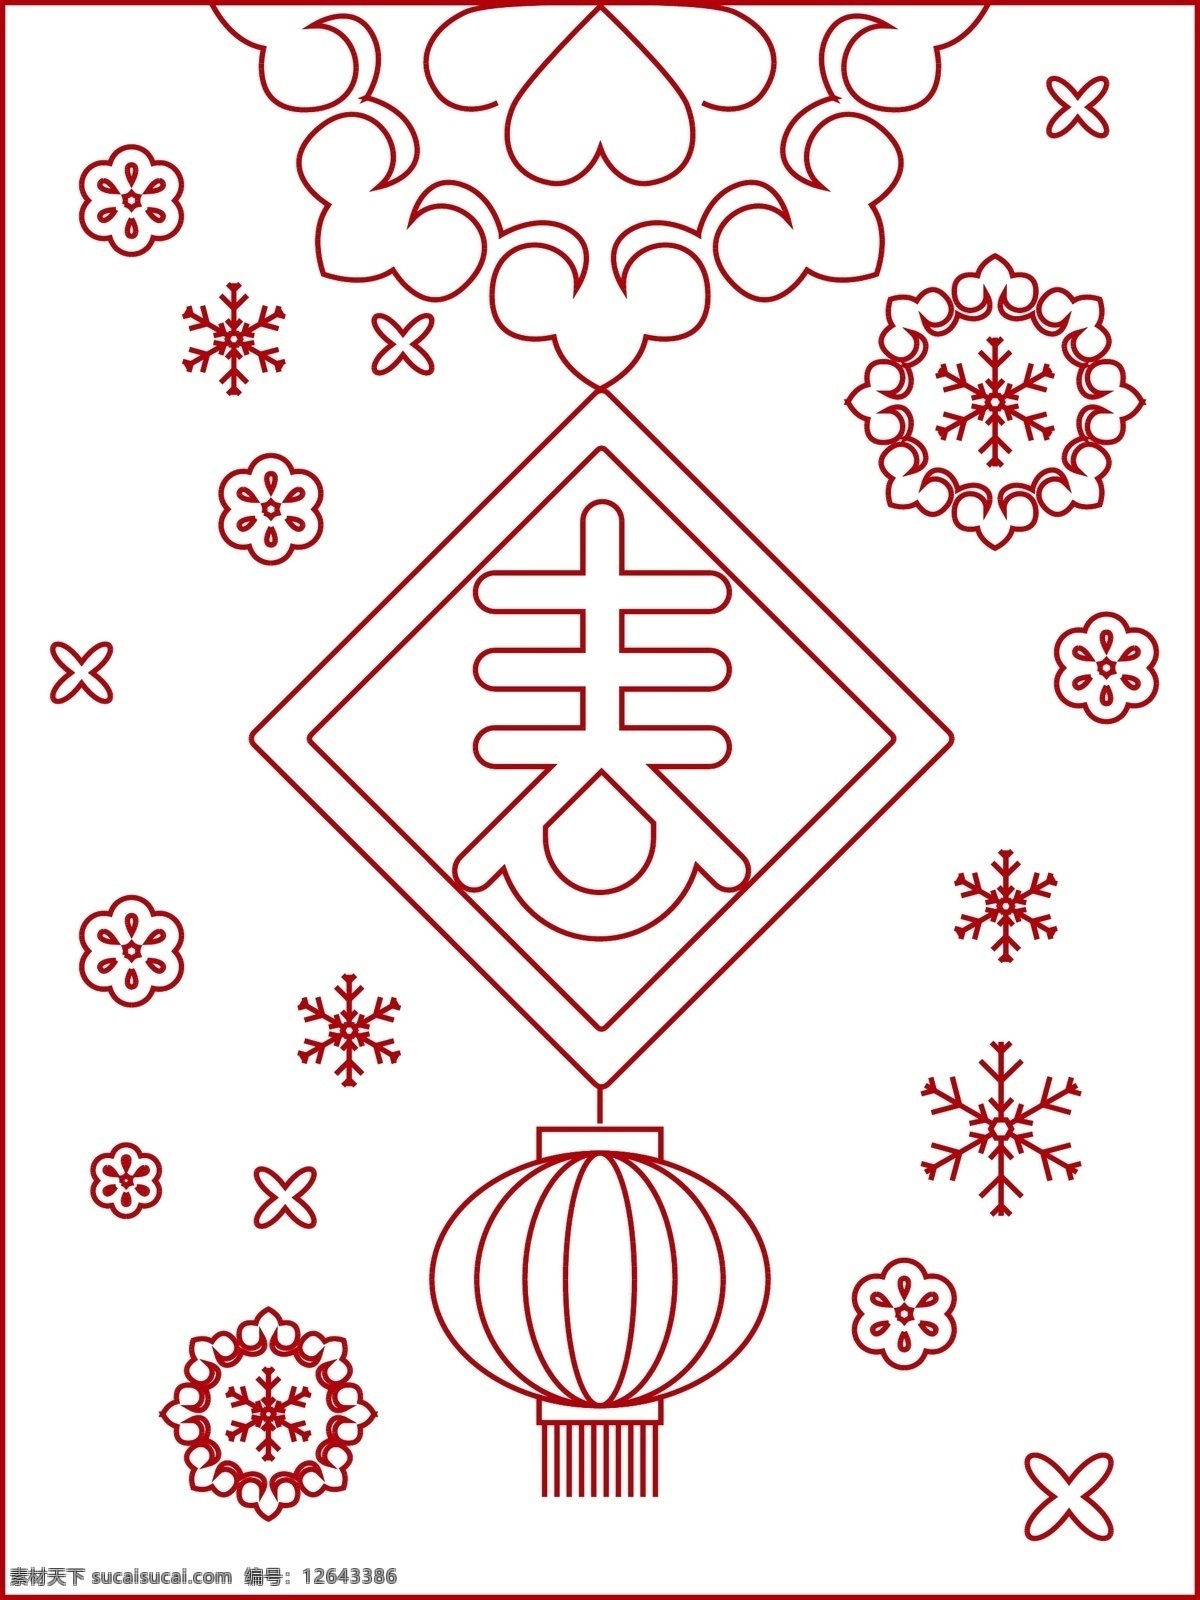 春节 烟花 线条 海报 插画 矢量 创意 边框 红色的烟花 红色的五角星 红色的中国结 唯美边框